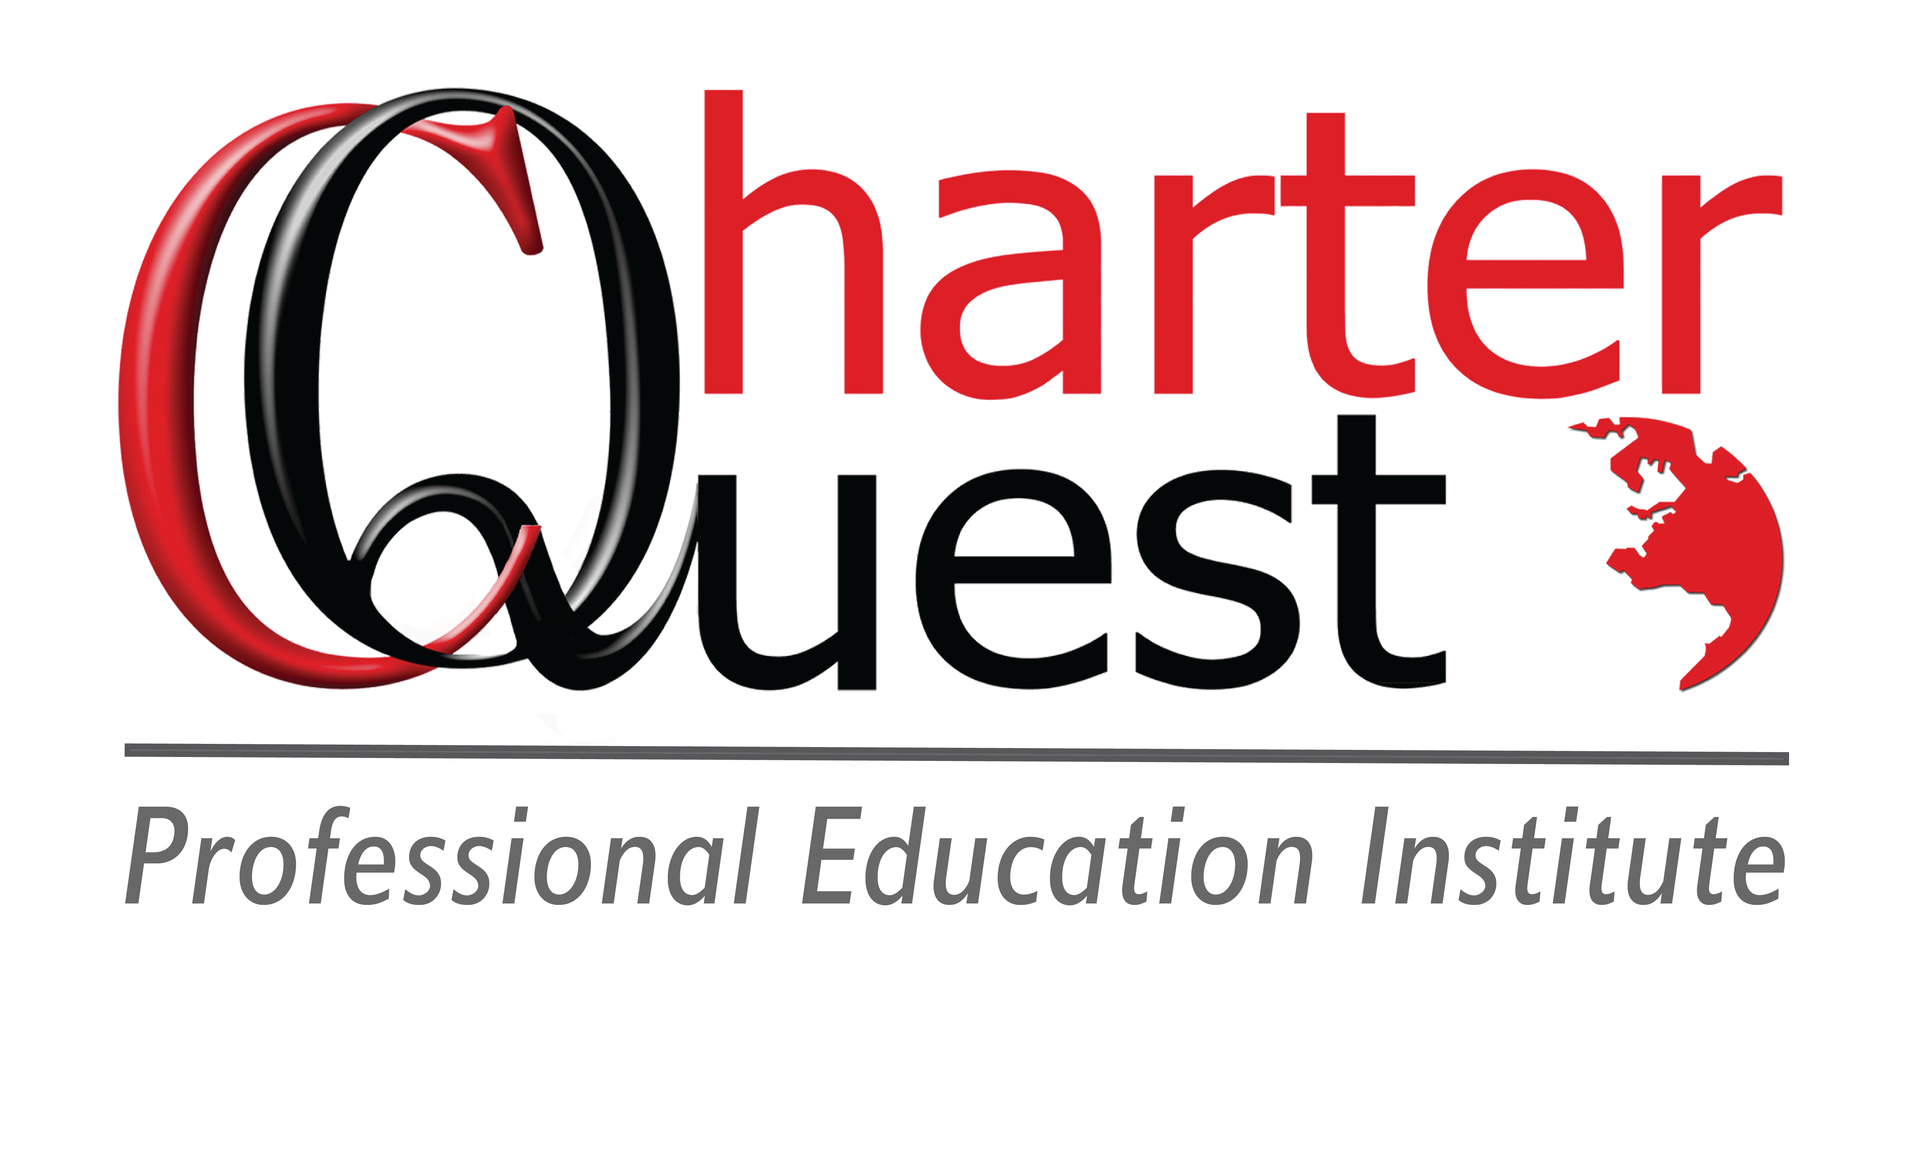 www.charterquest.co.za